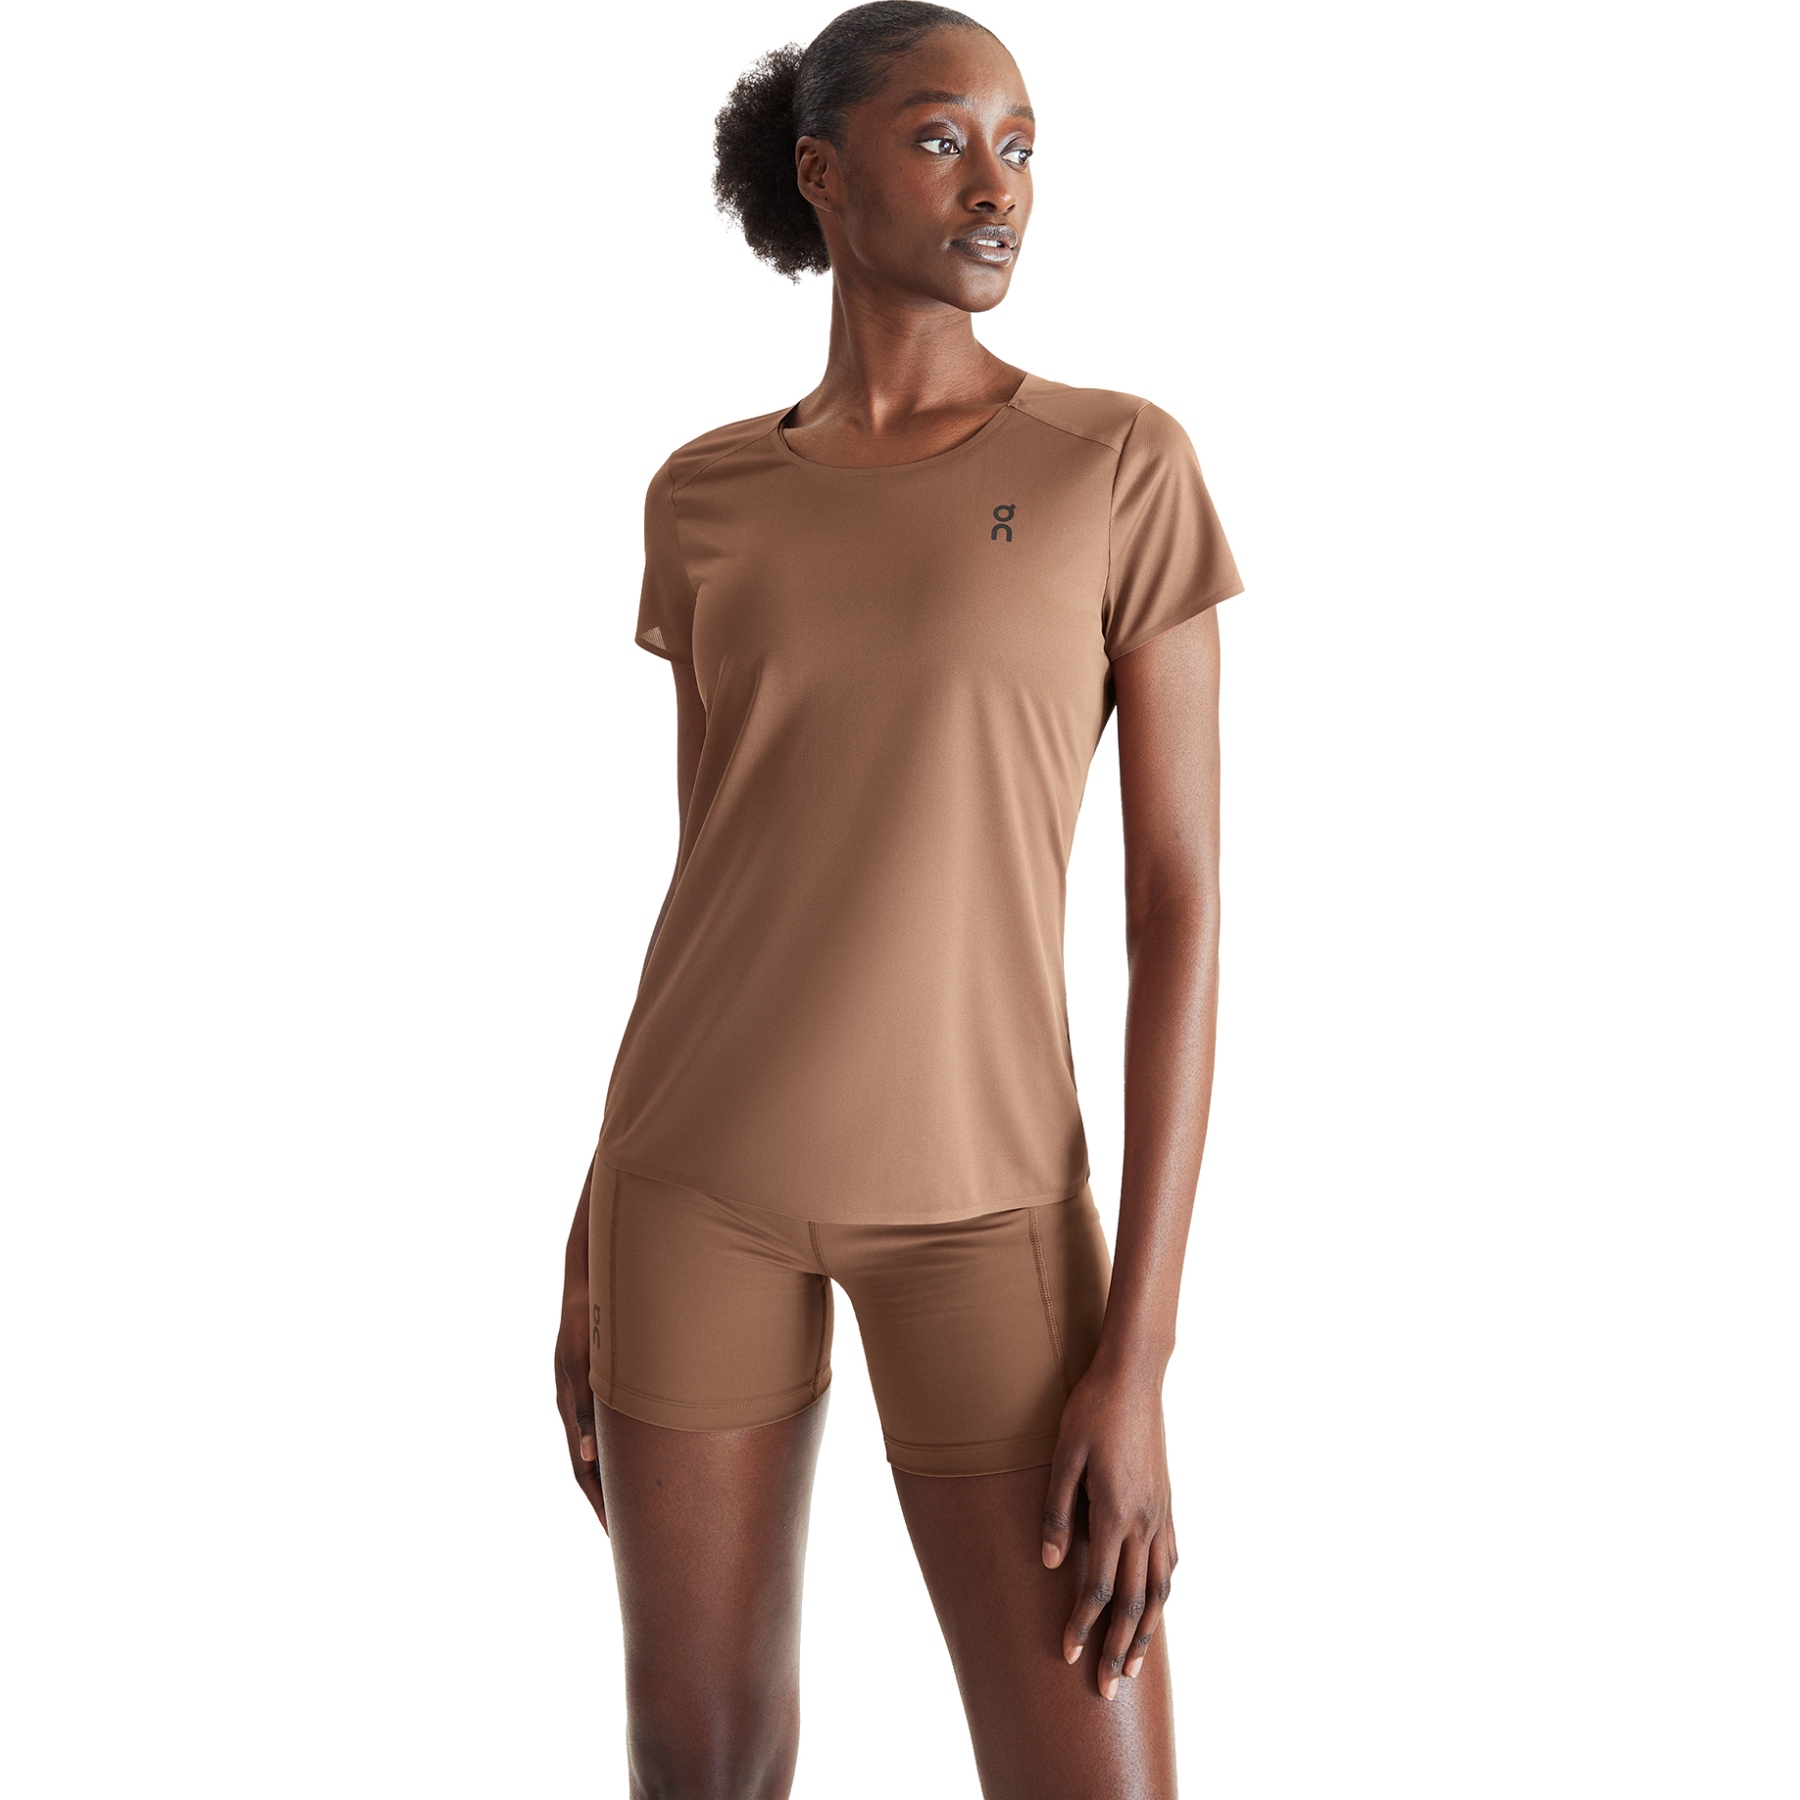 Produktbild von On Performance-T Damen Laufshirt - Cocoa &amp; Schwarz